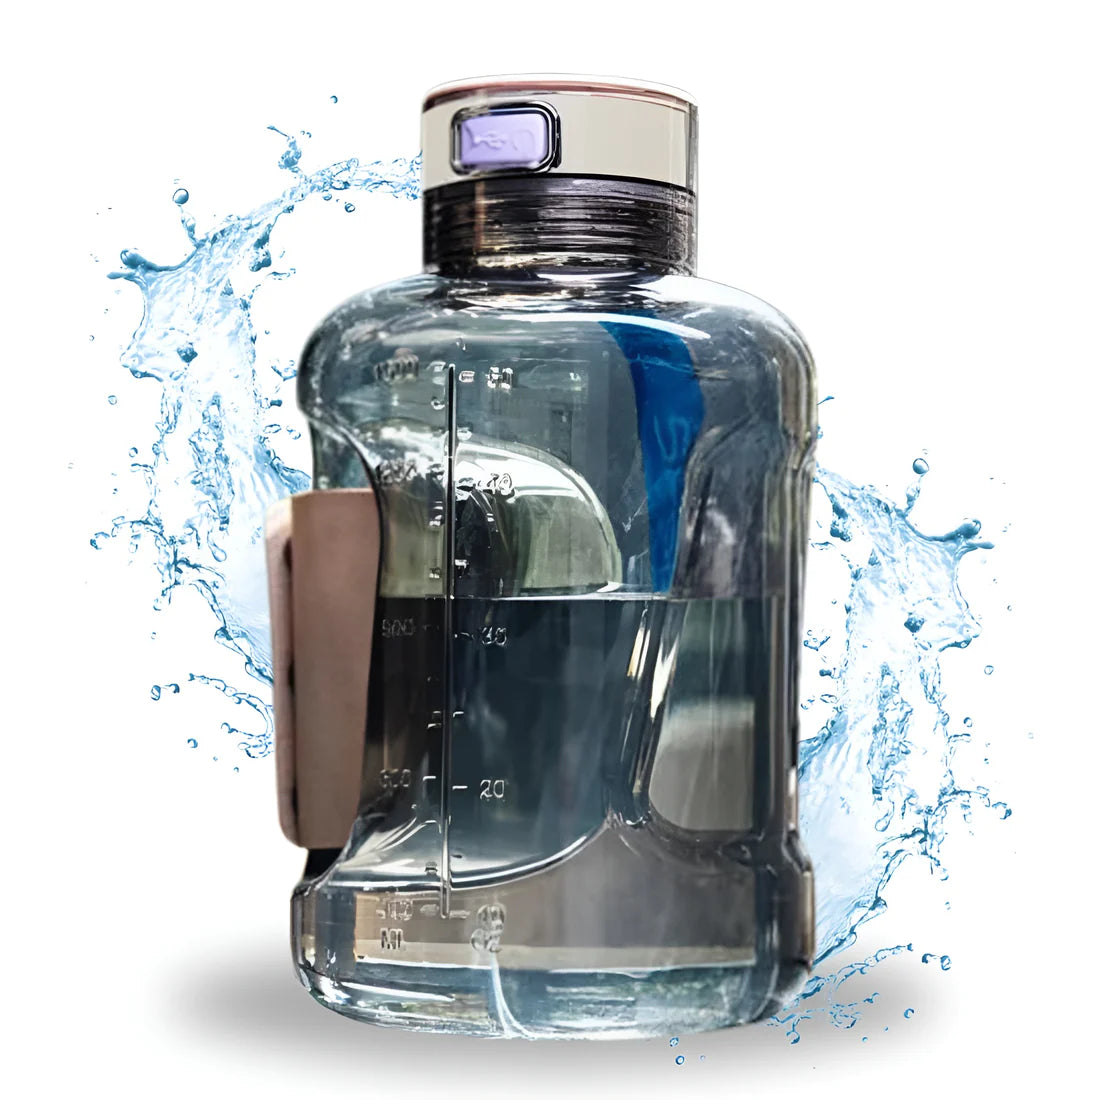 Hydrogen Water Jug Bottle